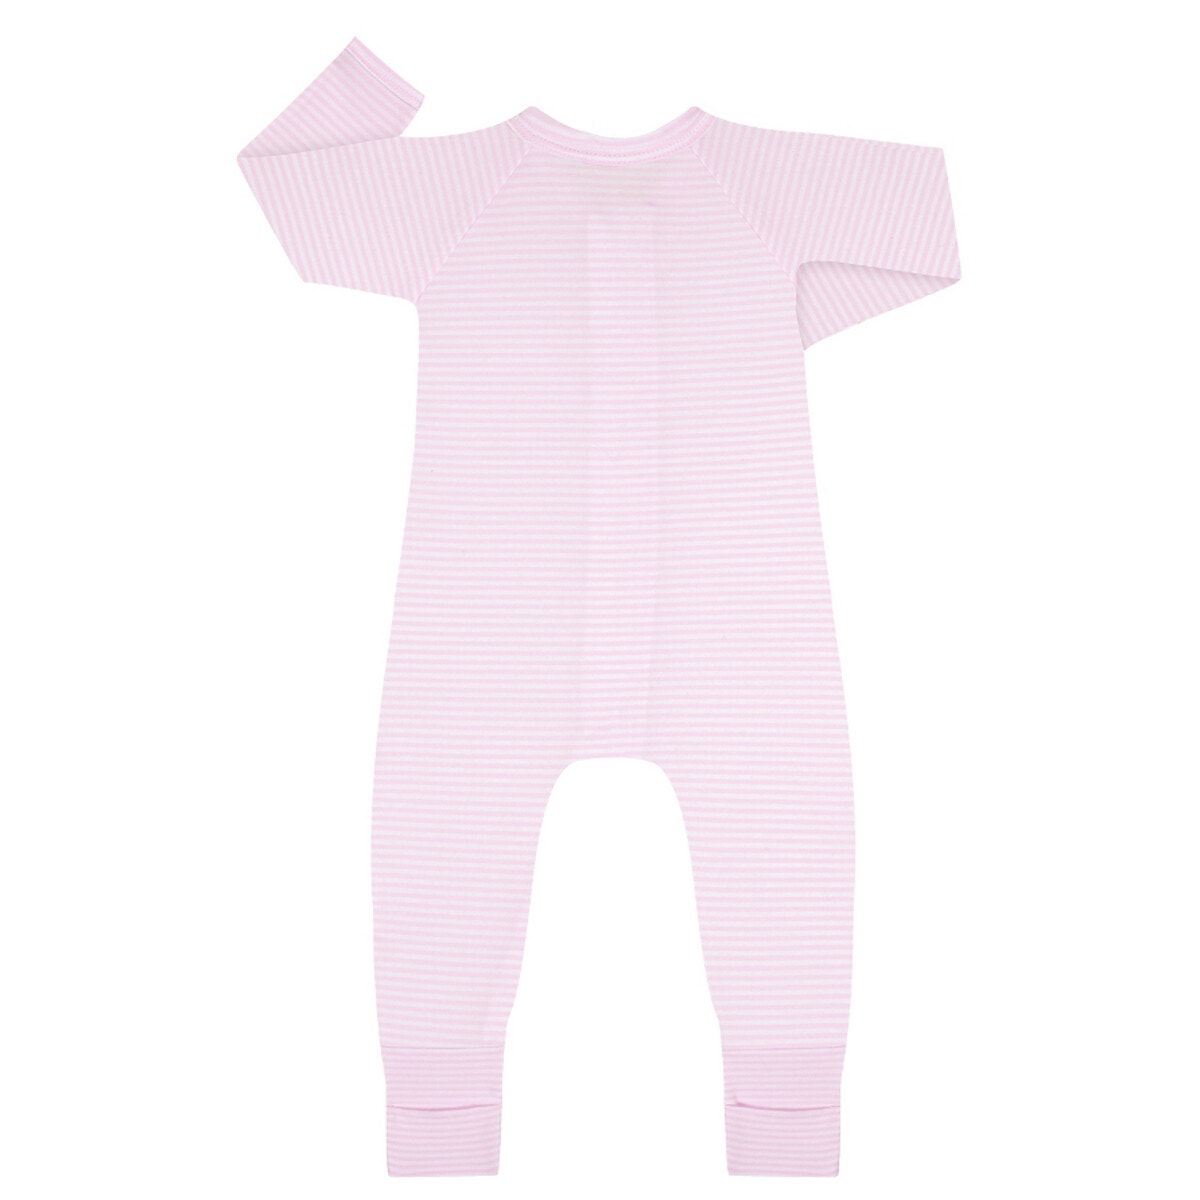 ΠΑΙΔΙ | Βρεφικά | Πυτζάμες Πιτζάμα με φερμουάρ, 1 μηνός - 2 ετών